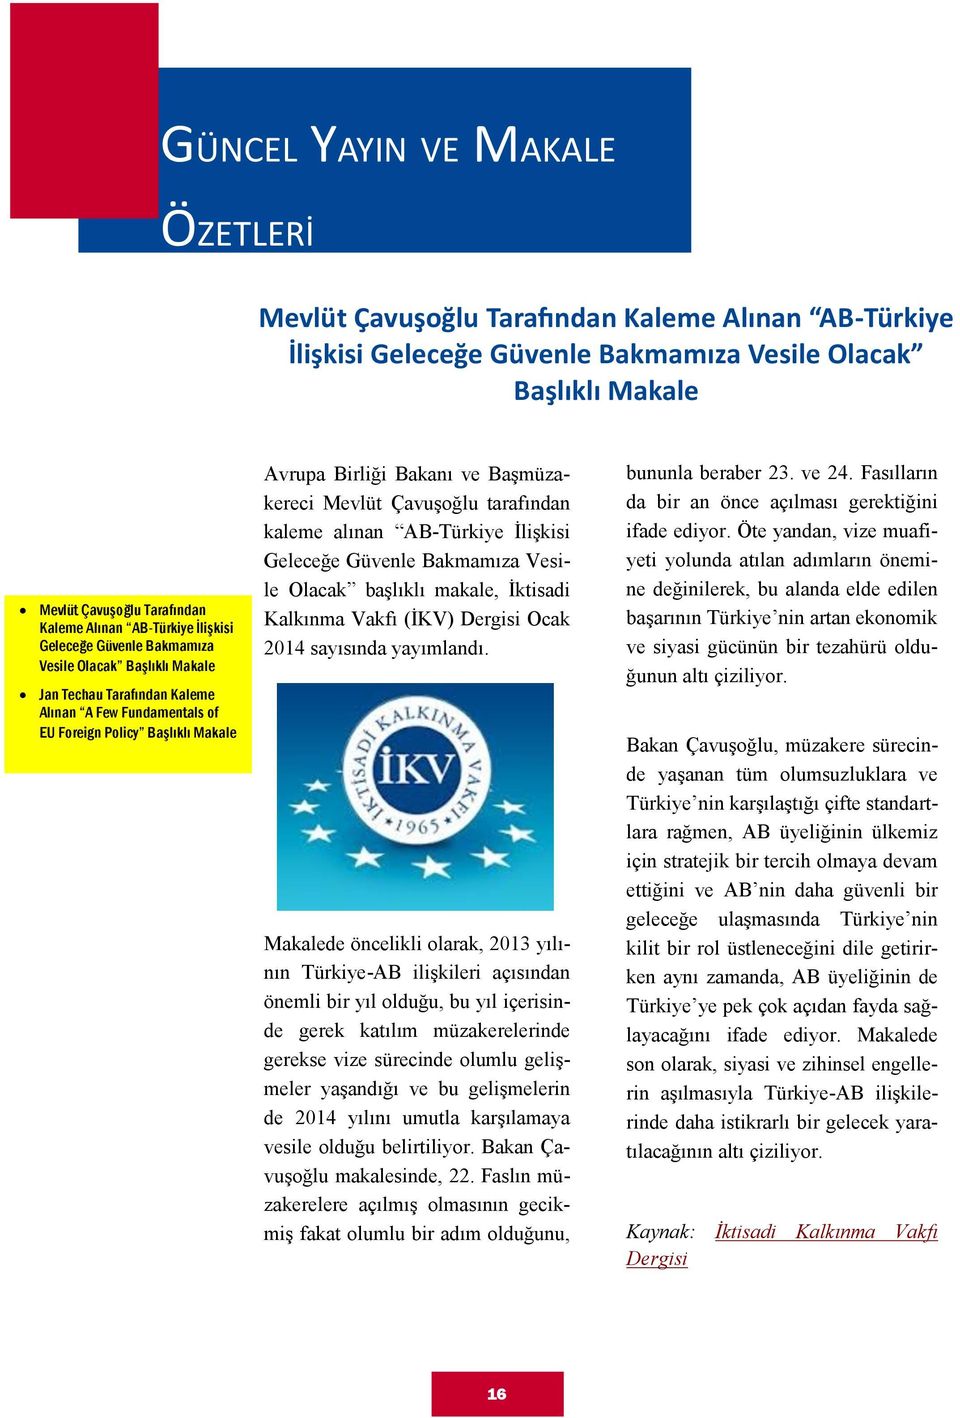 Başmüzakereci Mevlüt Çavuşoğlu tarafından kaleme alınan AB-Türkiye İlişkisi Geleceğe Güvenle Bakmamıza Vesile Olacak başlıklı makale, İktisadi Kalkınma Vakfı (İKV) Dergisi Ocak 2014 sayısında